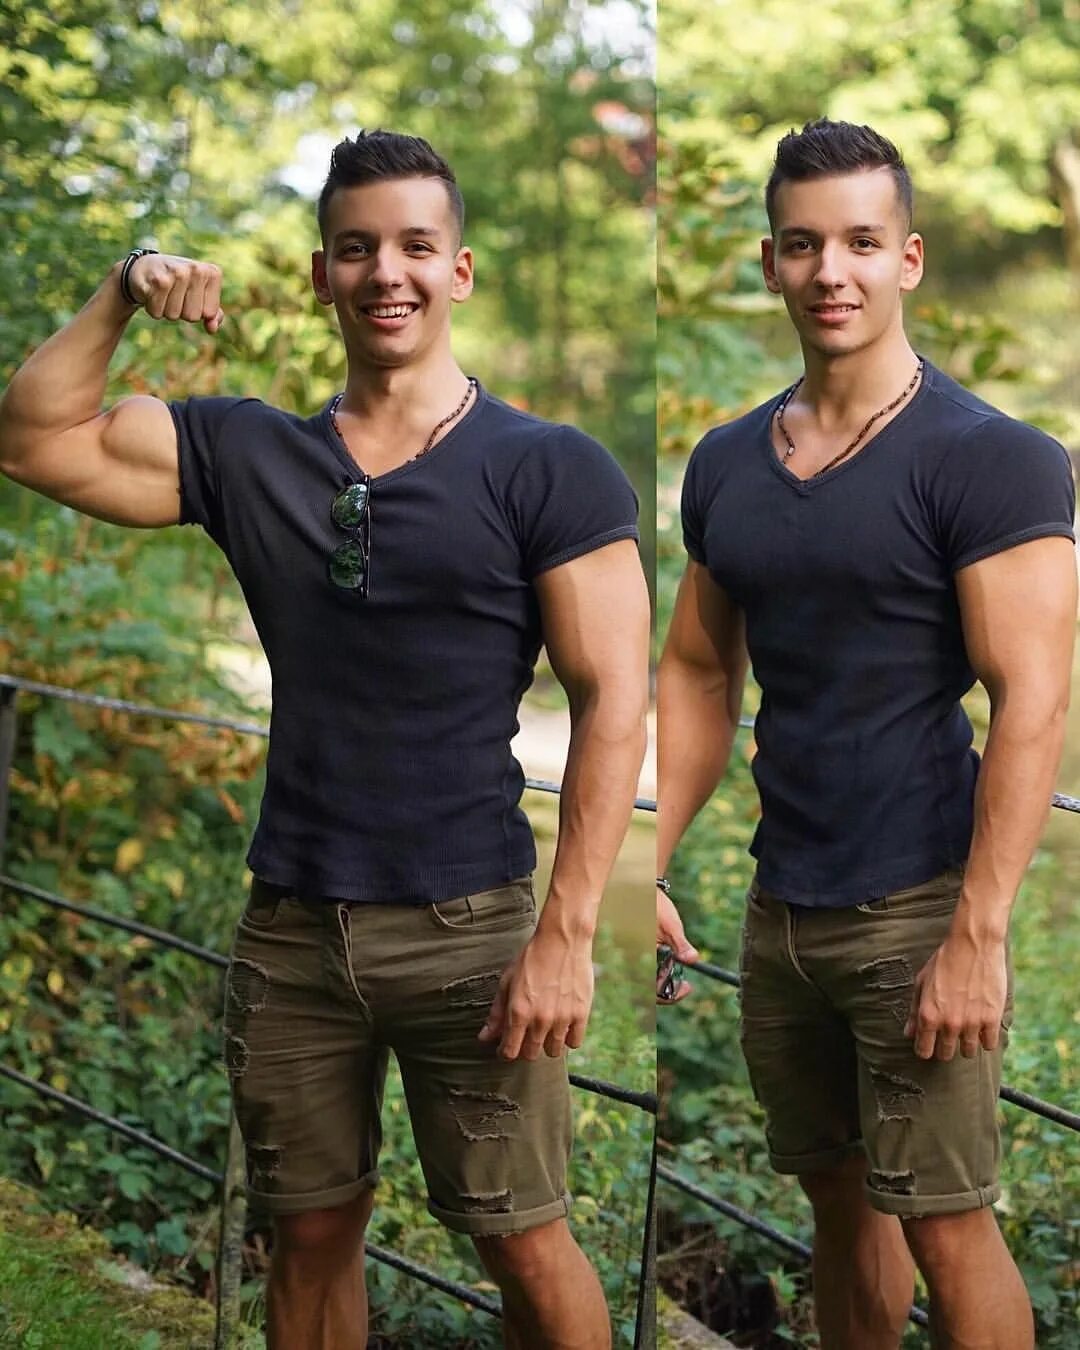 Radoslav Raychev. Парень 22 года. Фото мужчины 22 года. Как выглядят парни в 22 года.